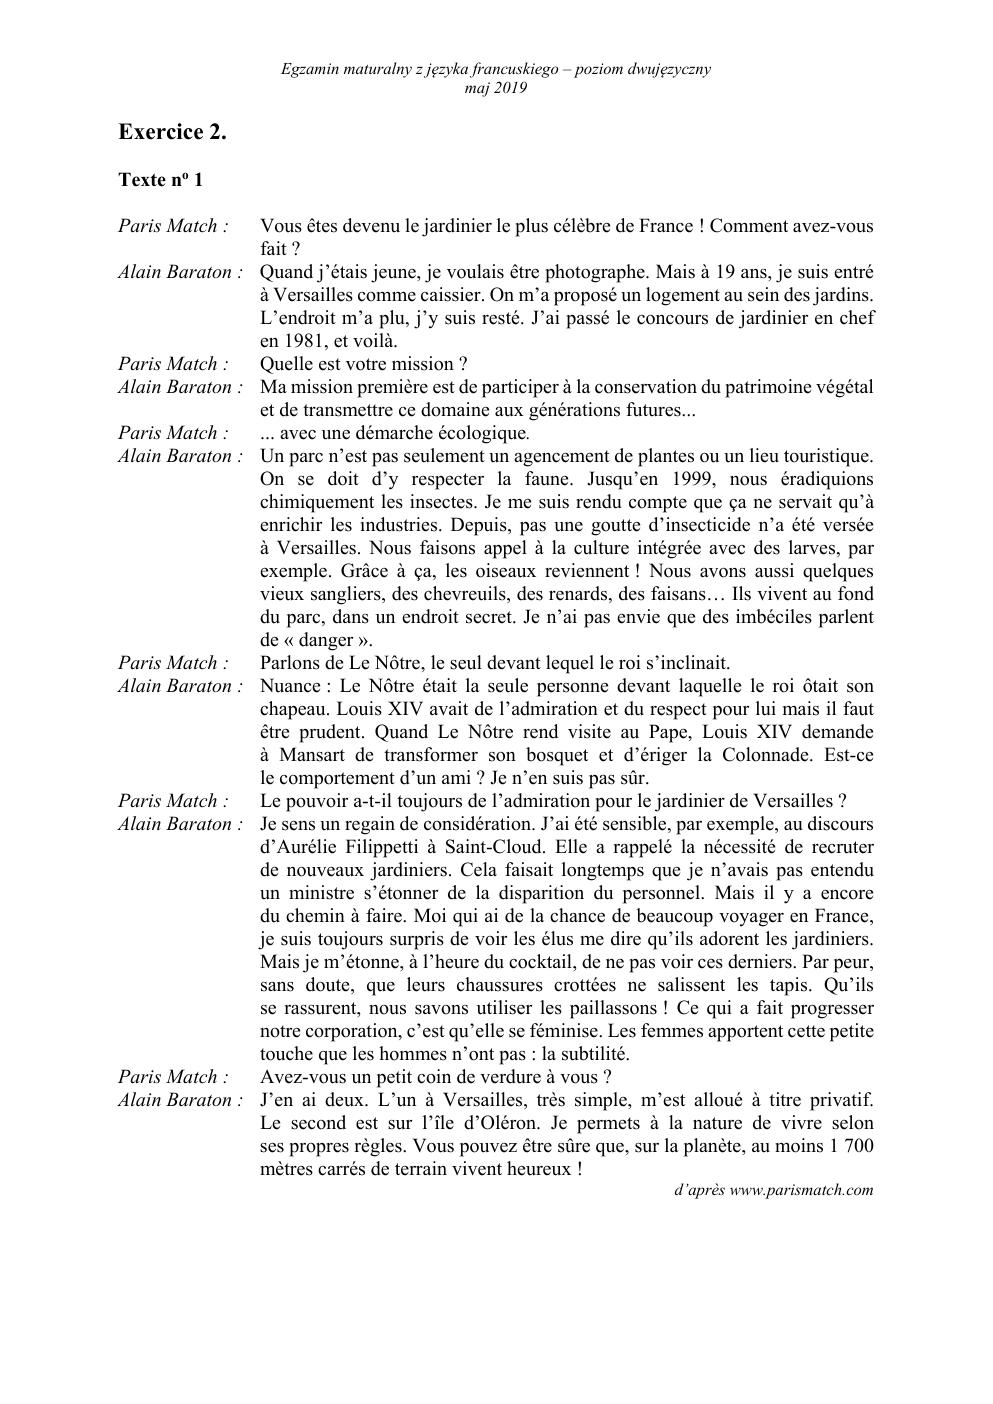 matura-2019-jezyk-francuski-dwujezyczny-transkrypcja-2